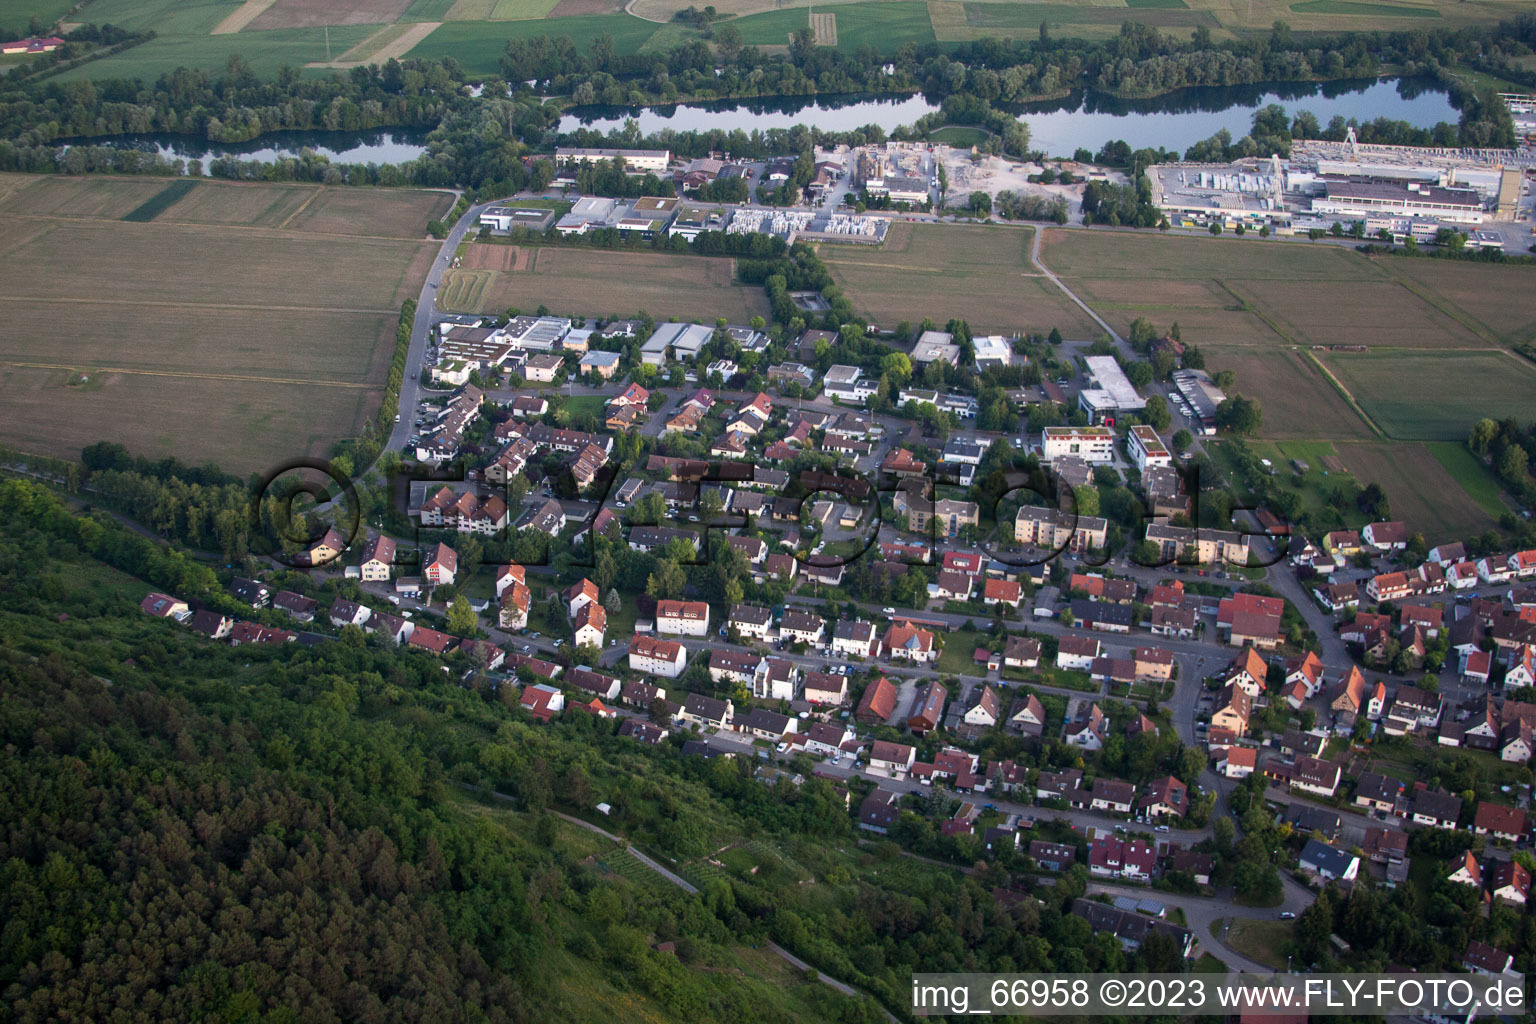 Hirschau dans le département Bade-Wurtemberg, Allemagne vue d'en haut